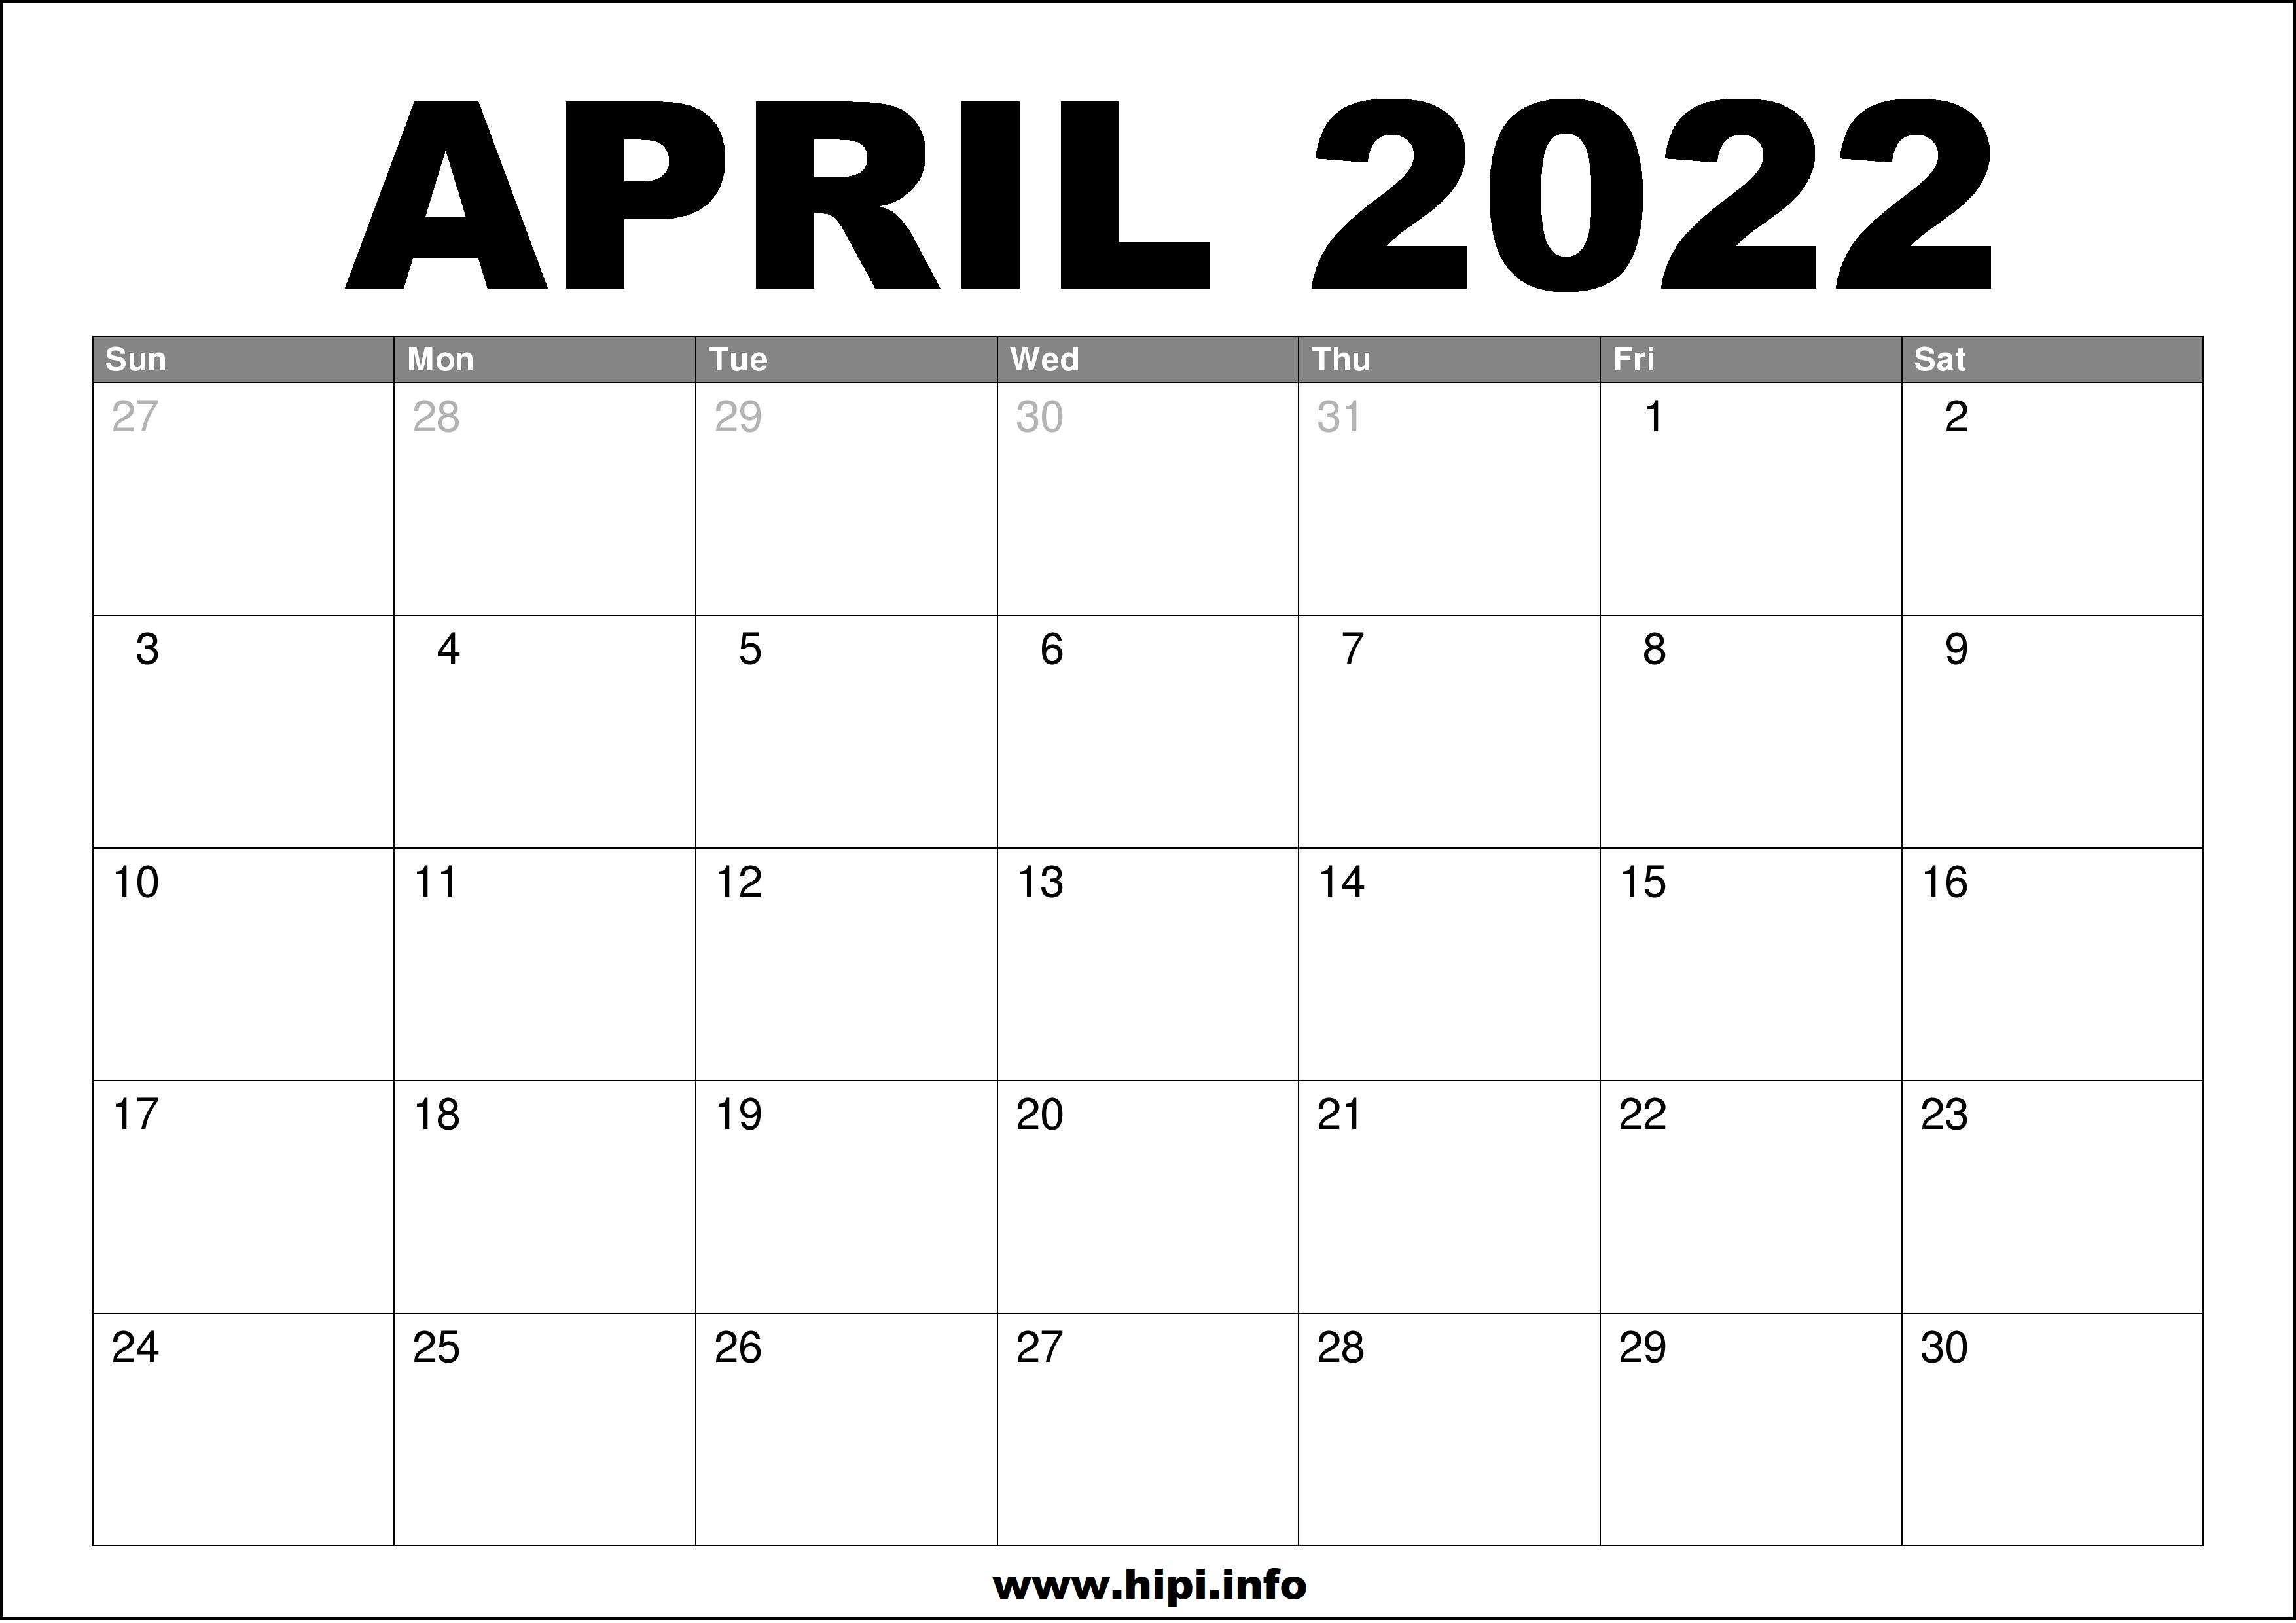 April 2022 Calendar Printable Free Hipi Info Calendars Printable Free